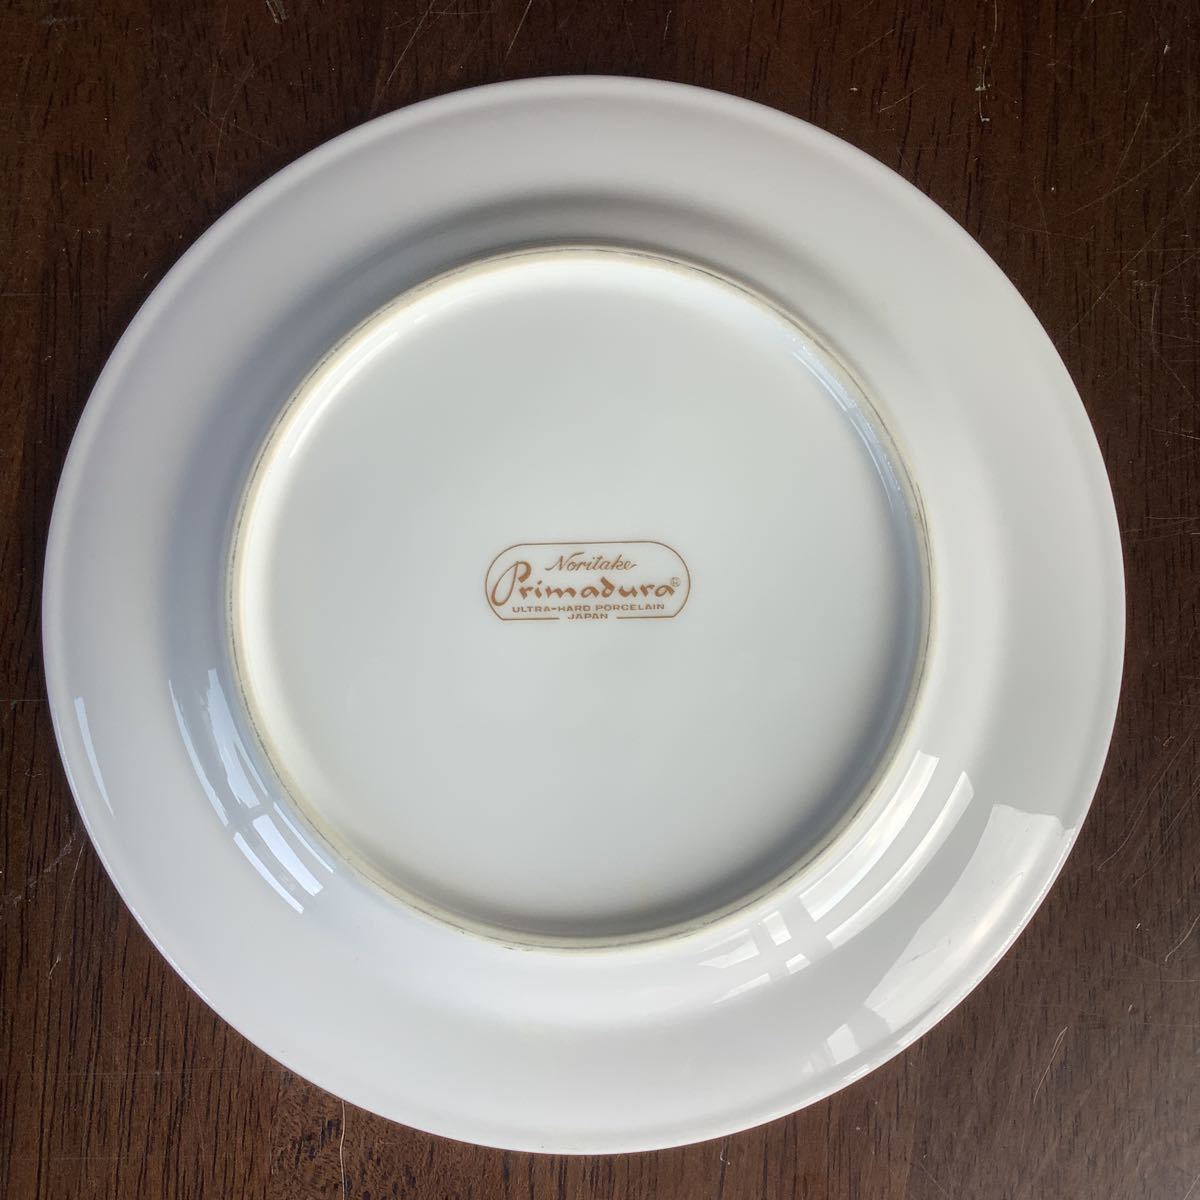 Noritake Primadura ノリタケ プリマデュラ 業務用食器 洋食 ゴールド 小皿 サイド皿 直径約16.5cm 25枚セット 中古6_画像3